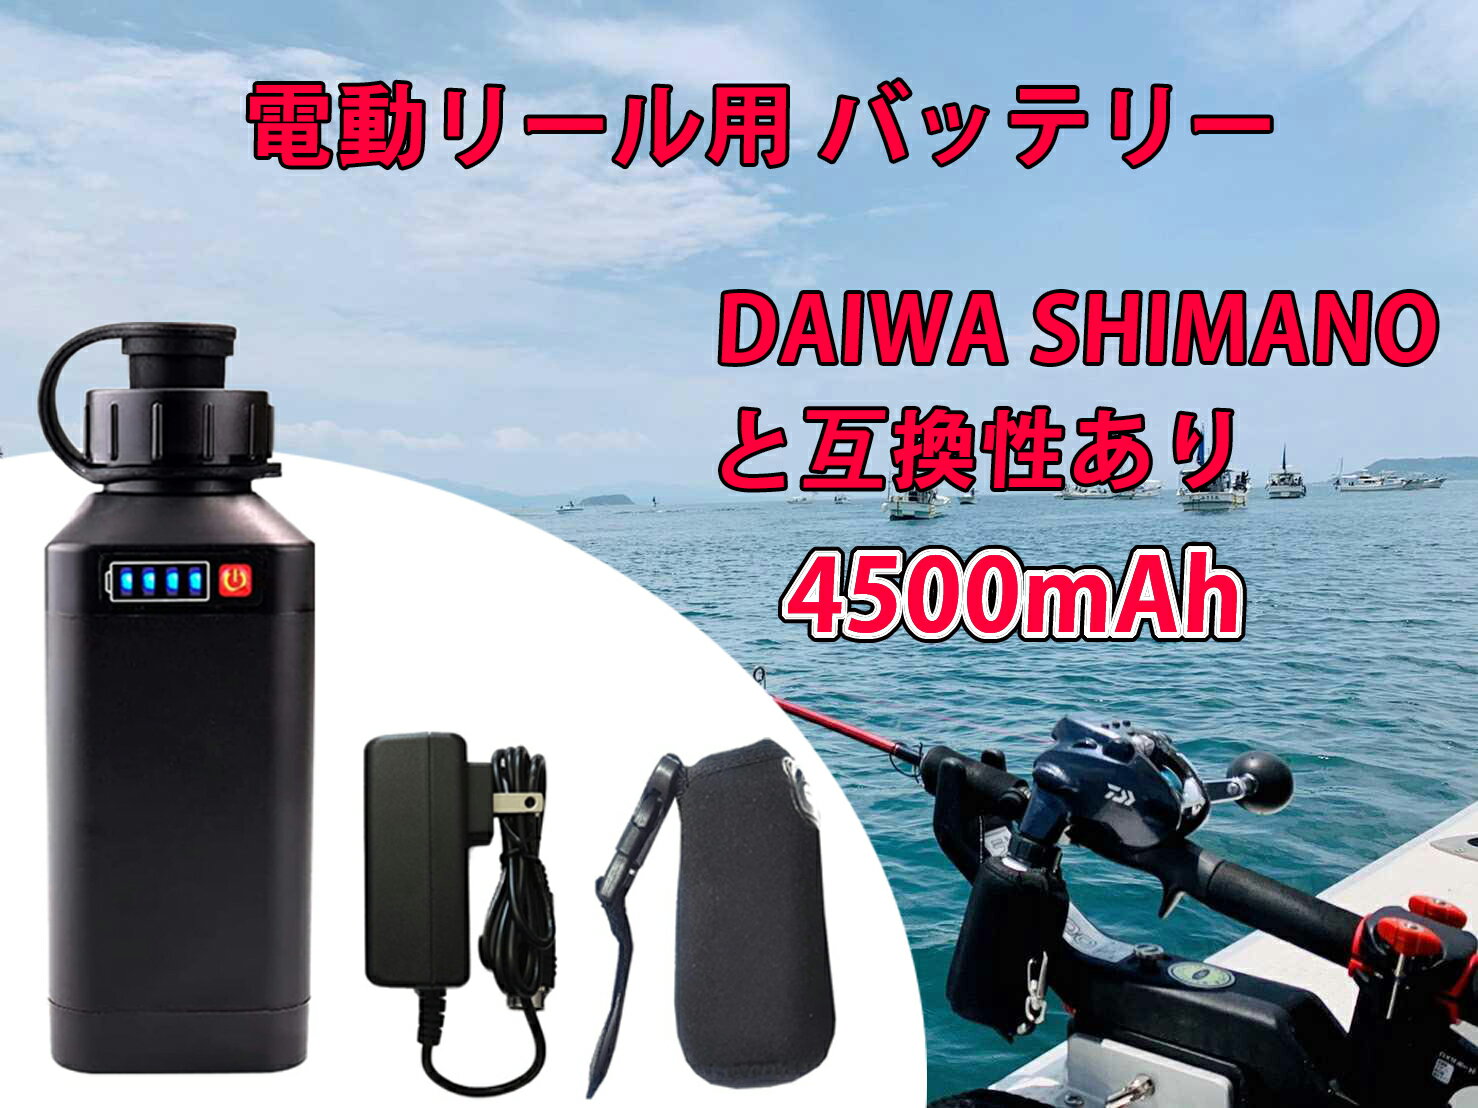 電動リール用 バッテリー 4500mAh LED電量表示付き 船釣り 電動ジギング用 バッテリー DAIWA SHIMANOと互換性あり